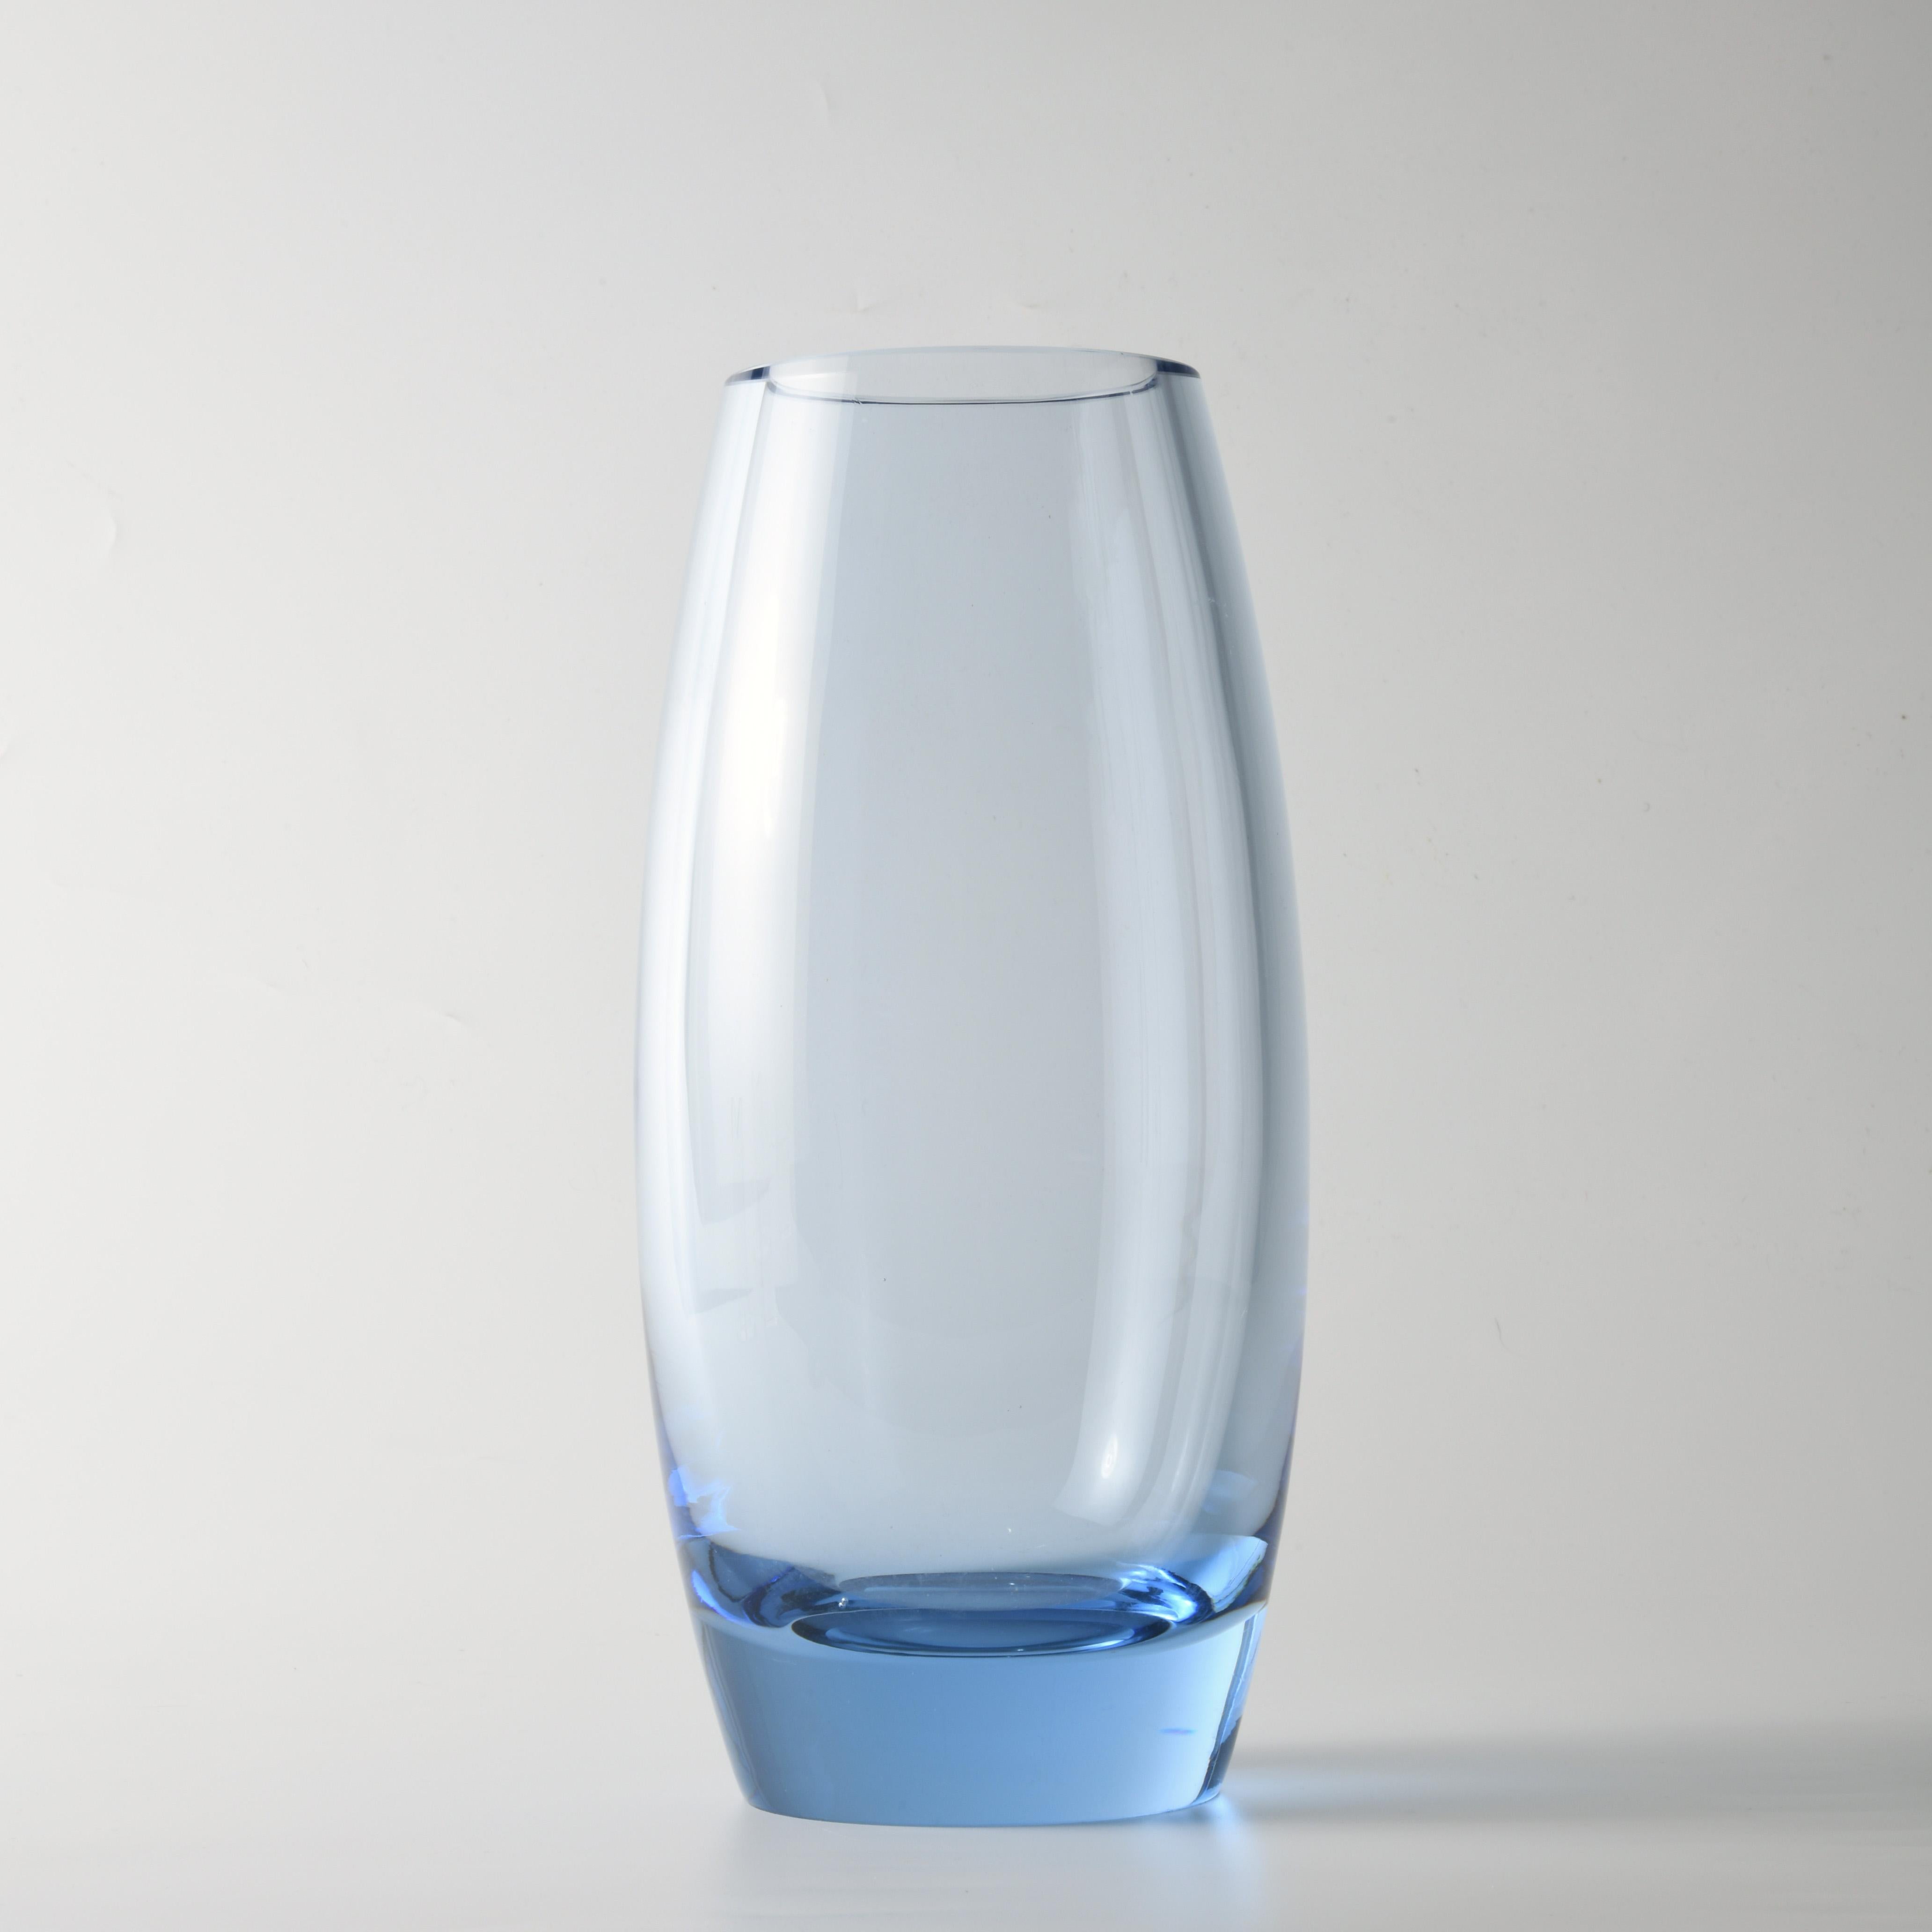 Vase en verre (H:25cm), design de Per Lutken (1916-1998), édité par la célèbre verrerie danoise Holmegaard. Le ton bleuté, l'épaisseur du verre visible au sommet font partie intégrante de la conception de ce vase, daté et signé en dessous.
Per